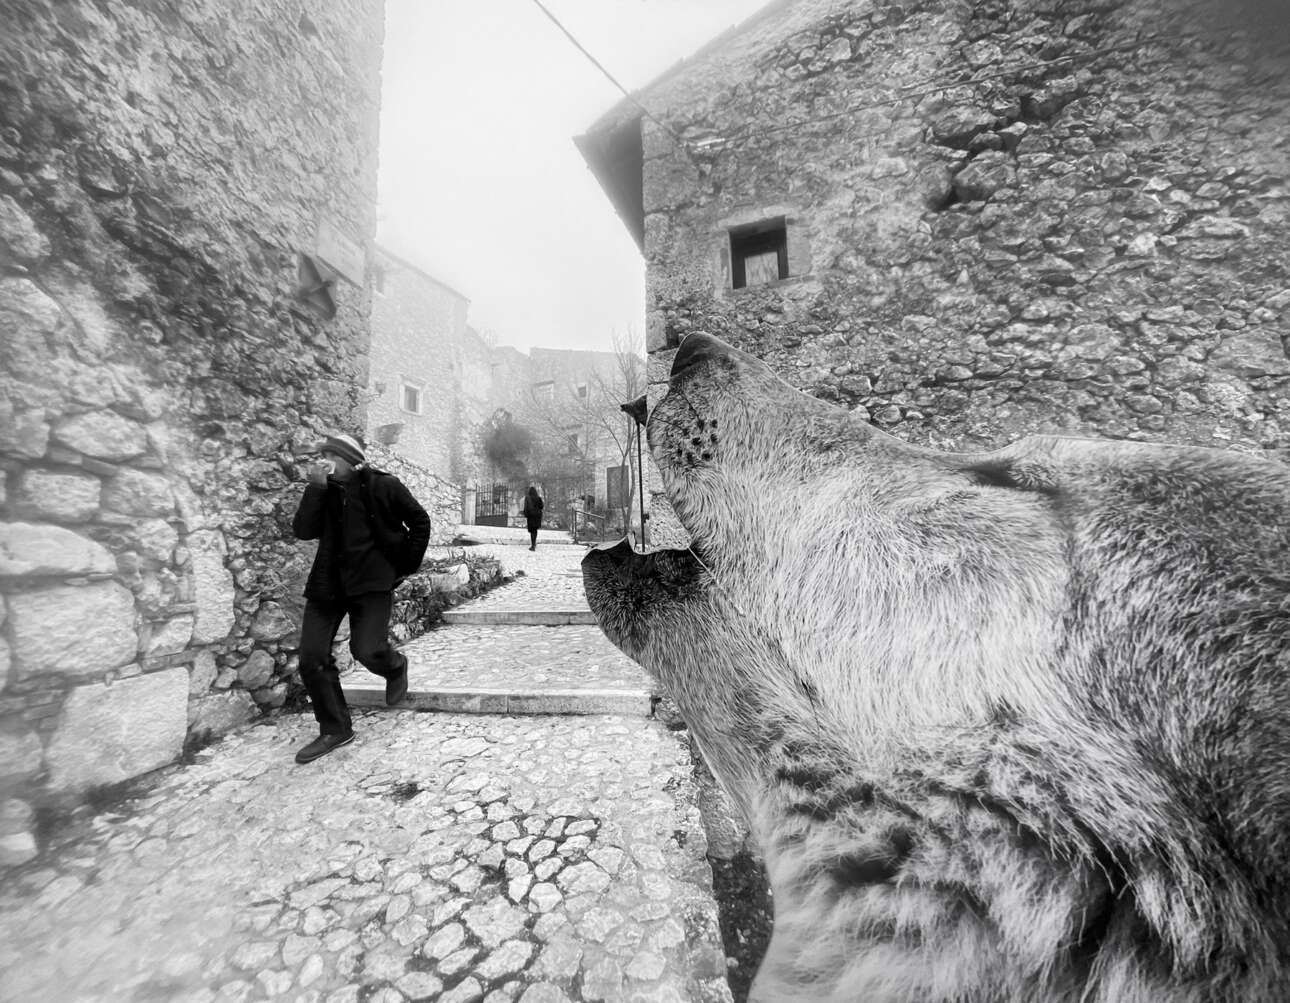 Τιμητική διάκριση στην κατηγορία Δρόμοι. Ενας λύκος κάνει την εμφάνισή του στο ορεινό Κάστρο της Rocca Calascio, στην περιοχή Αμπρούτσο της Ιταλίας